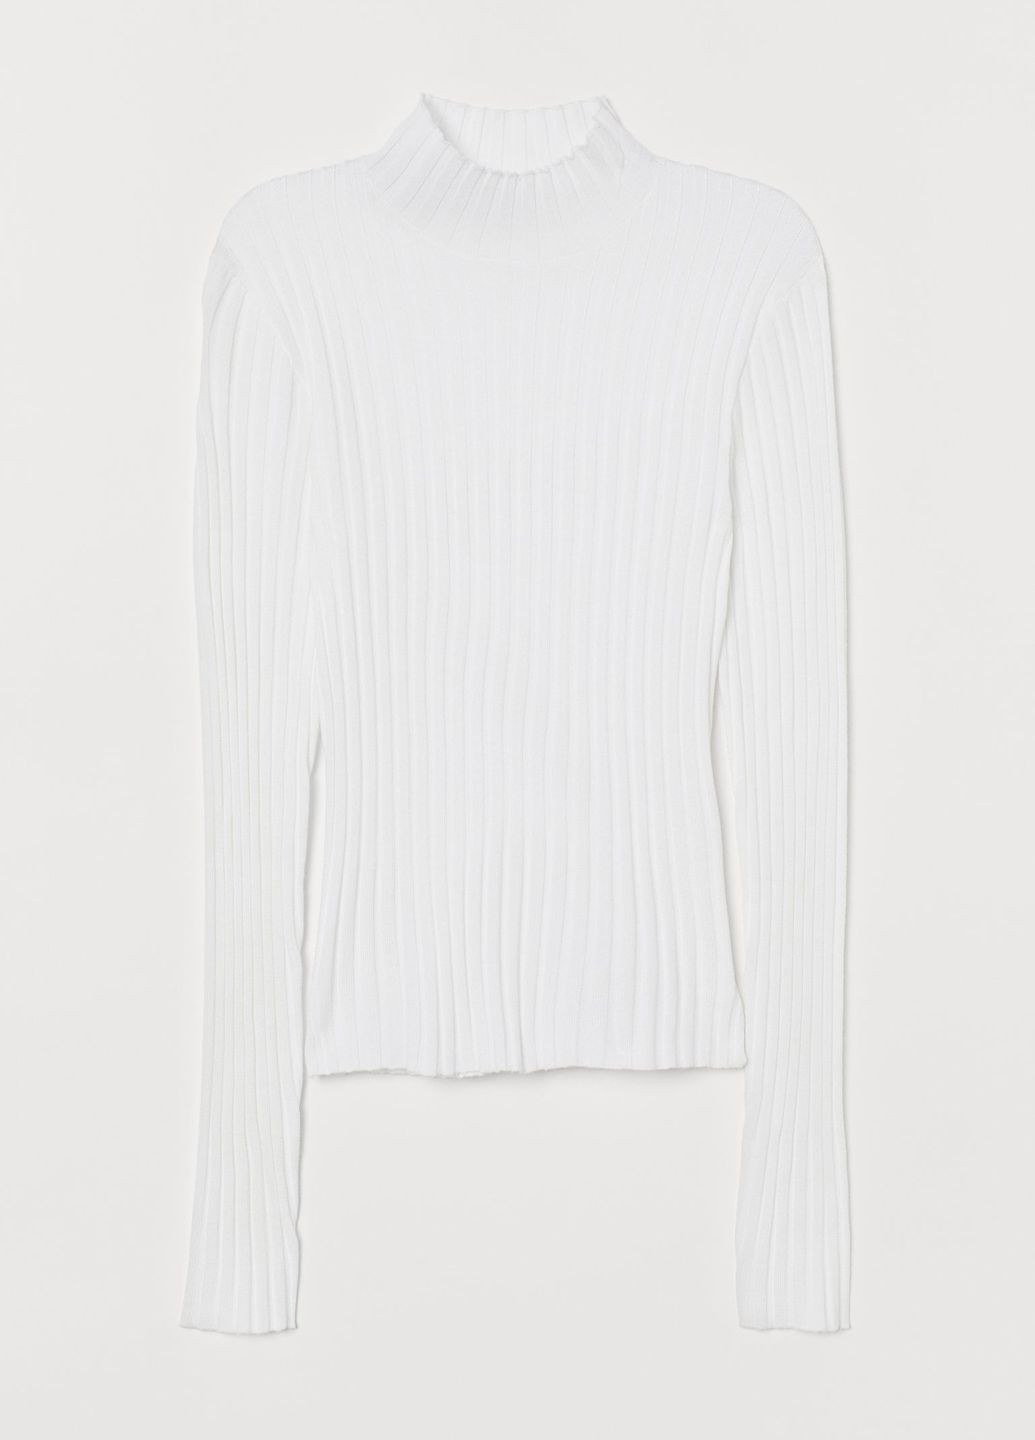 Белый демисезонный свитер с высоким воротником в рубчик белый кэжуал демисезон пуловер H&M